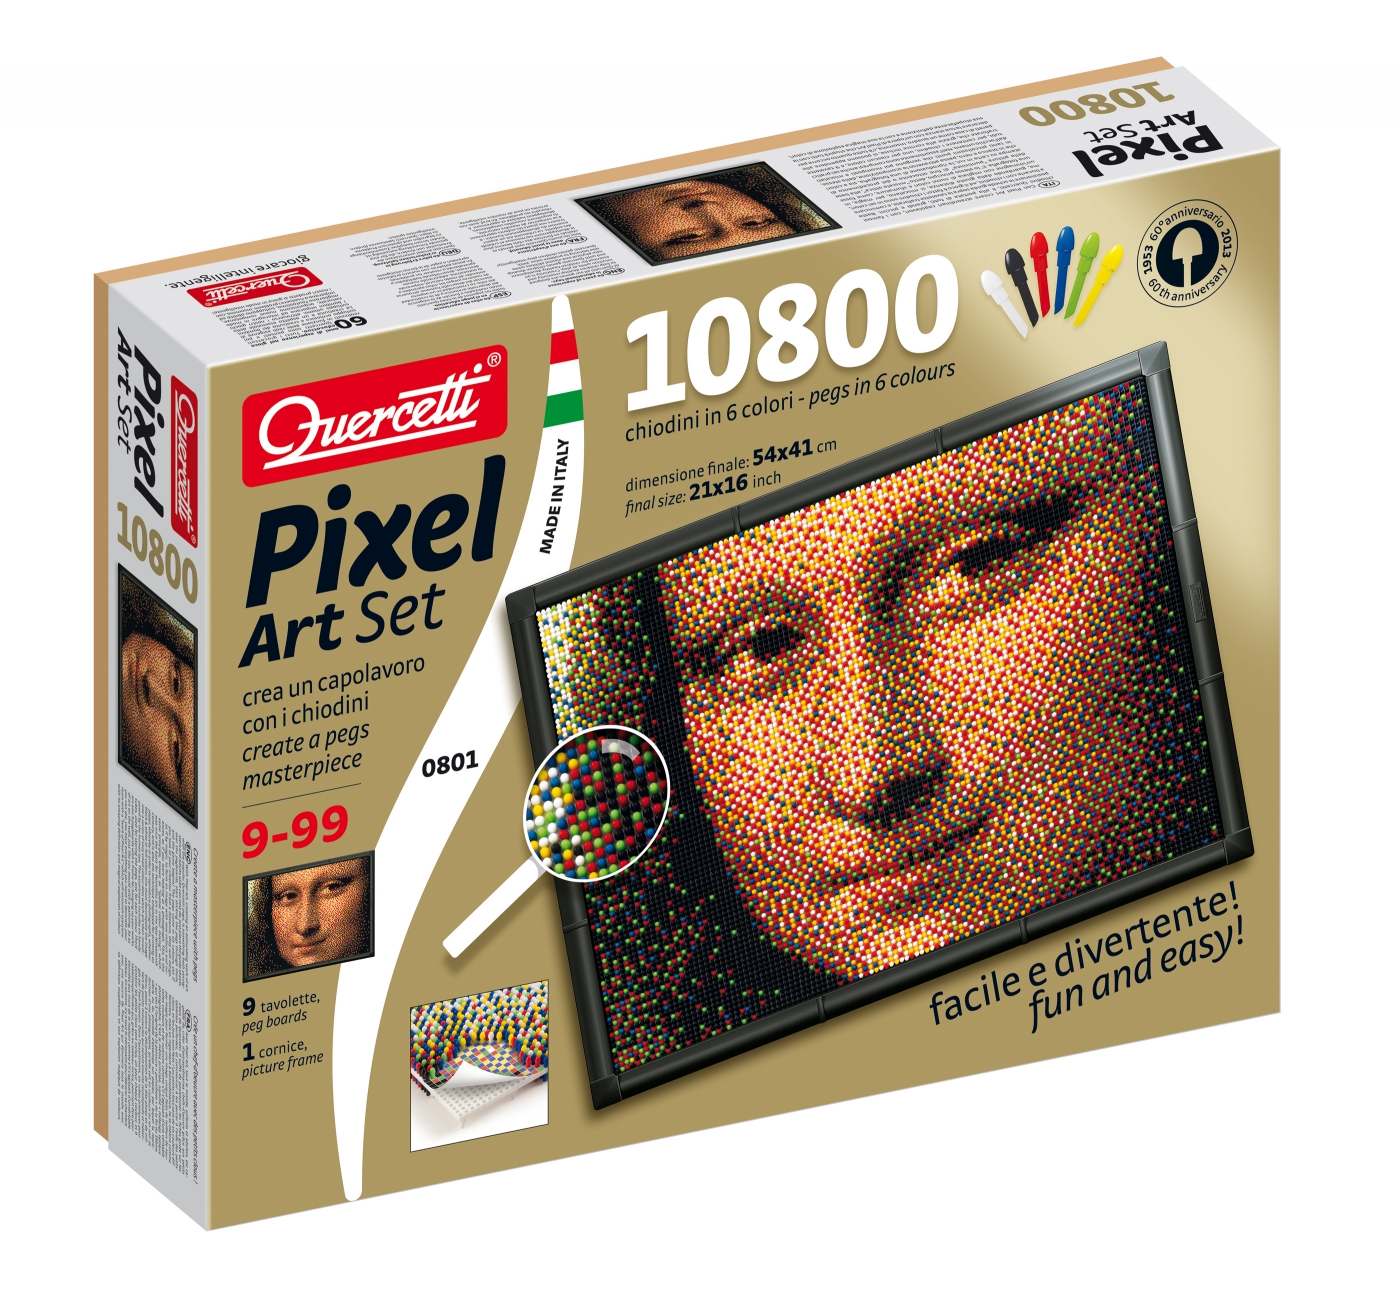 Quercetti Pixel Art 10800